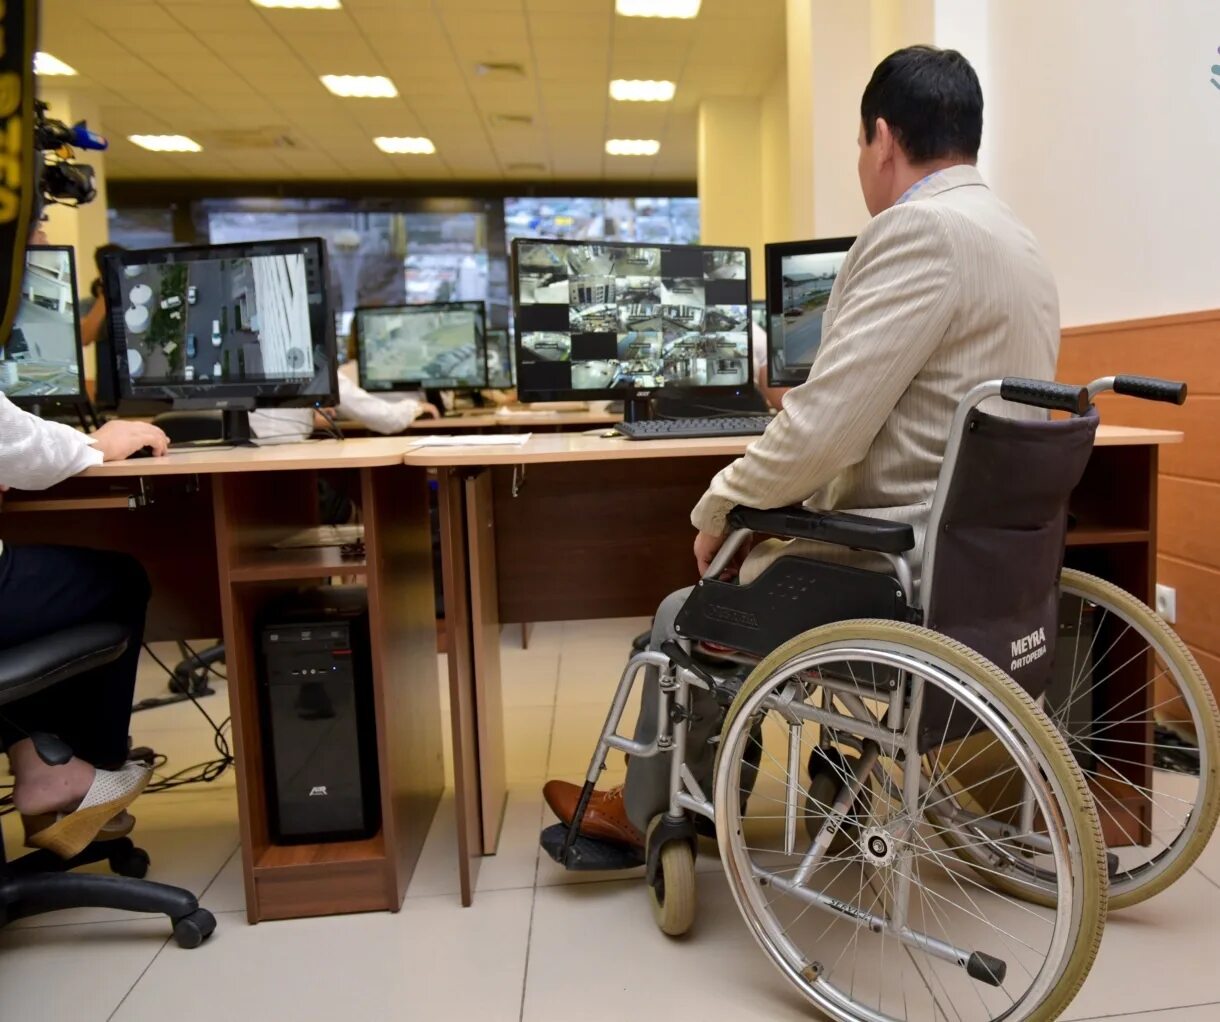 Рабочие места для инвалидов. Трудоустройство инвалидов. Оборудование рабочих мест для инвалидов. Рабочее место для людей с ограниченными возможностями.